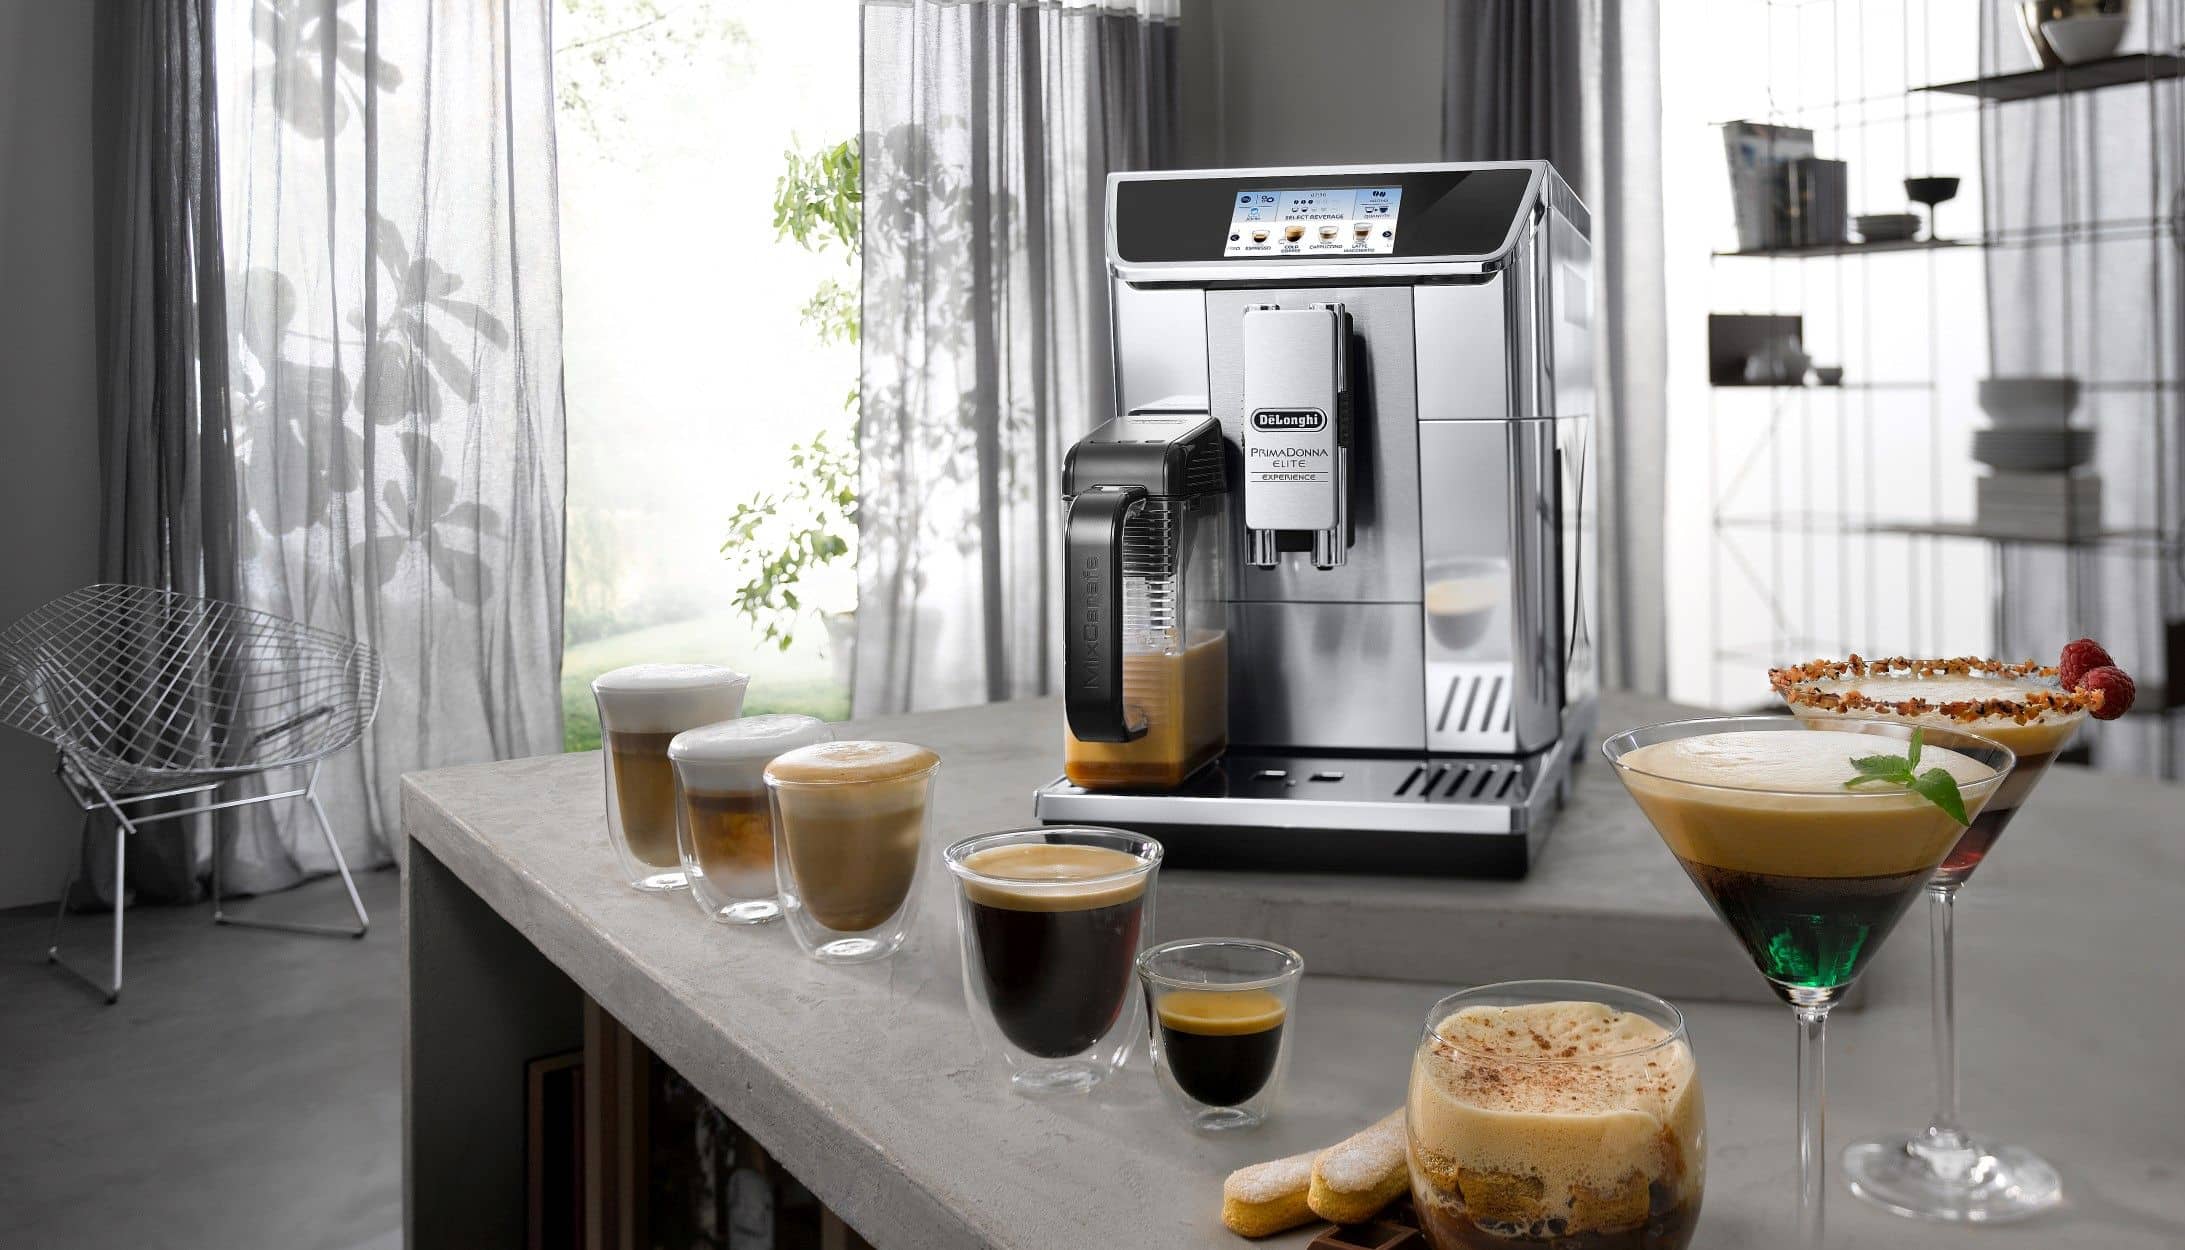 אפליקציה ייעודית הנקראת Coffee Link App מאפשרת יצירת מגוון משקאות חדשים, עוזרת בהפעלת המכונה ונותנת הסבר לכל פעולה